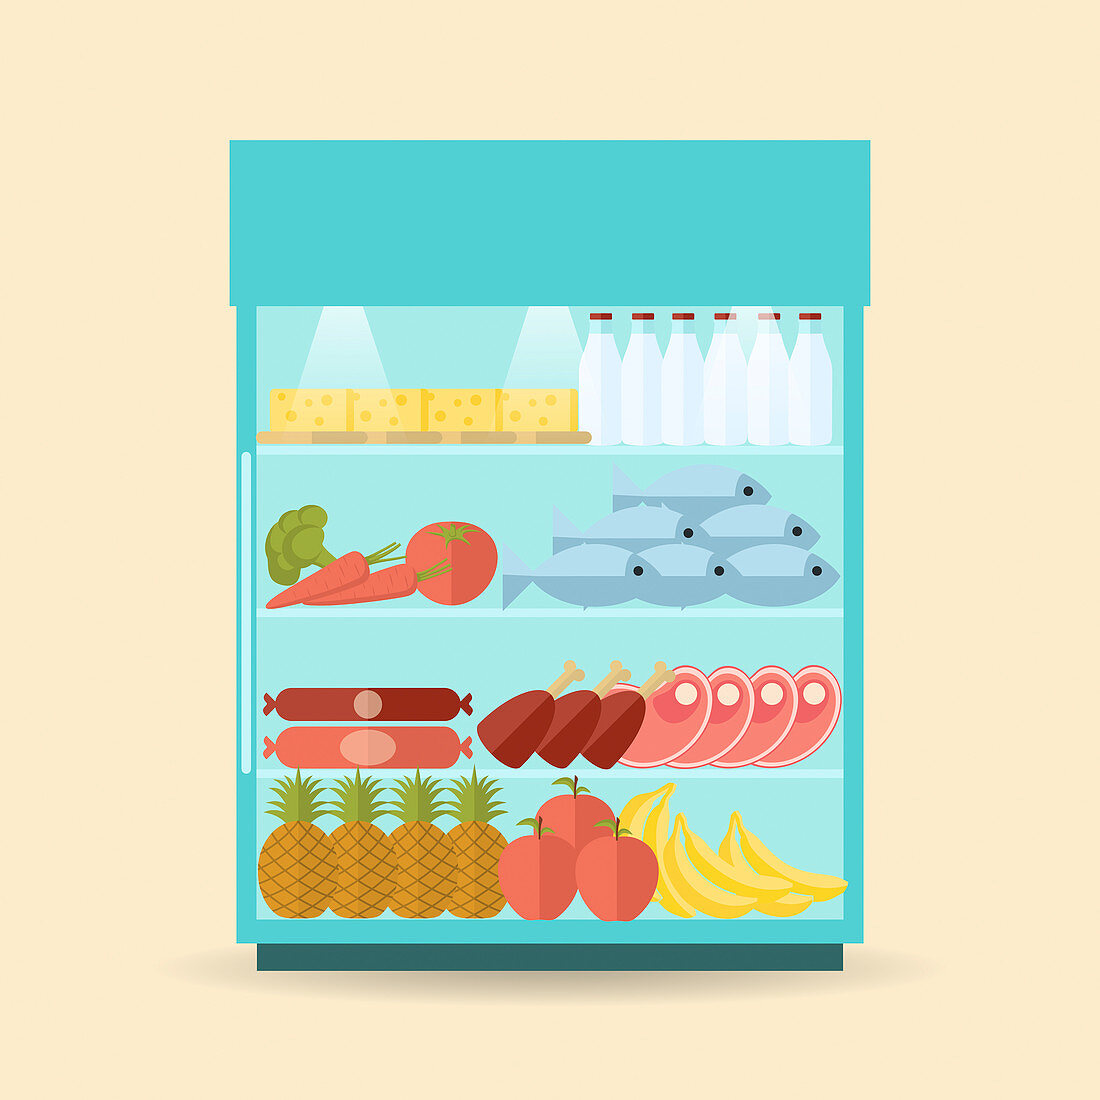 Supermarket chiller cabinet, illustration